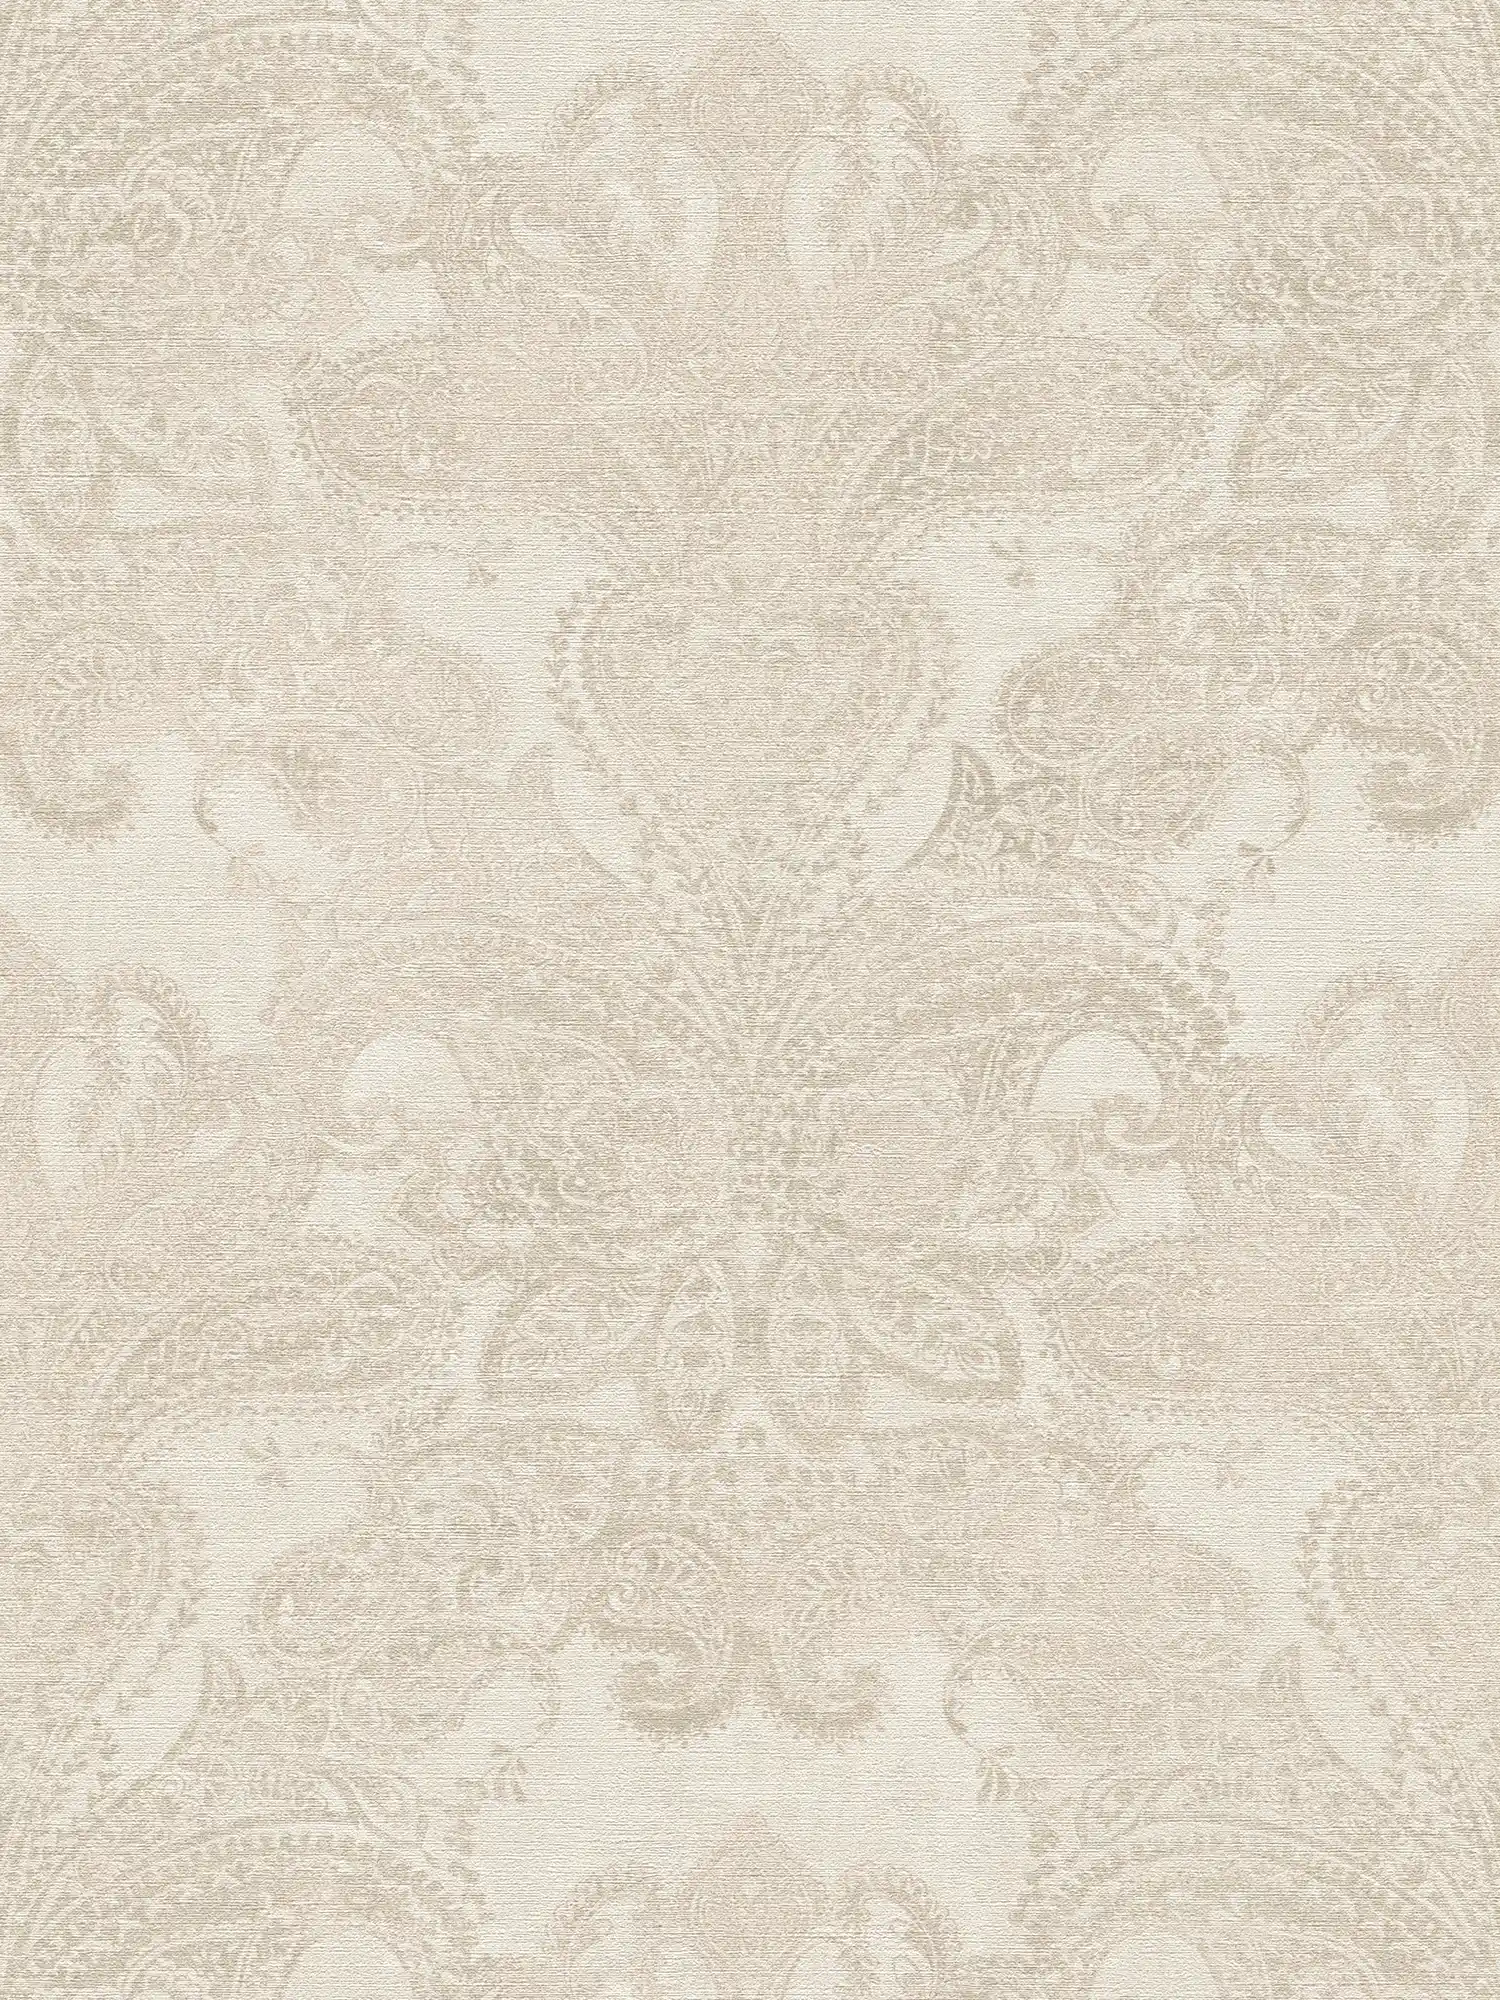 Barok behang met grote ornamenten - wit, crème, grijs
